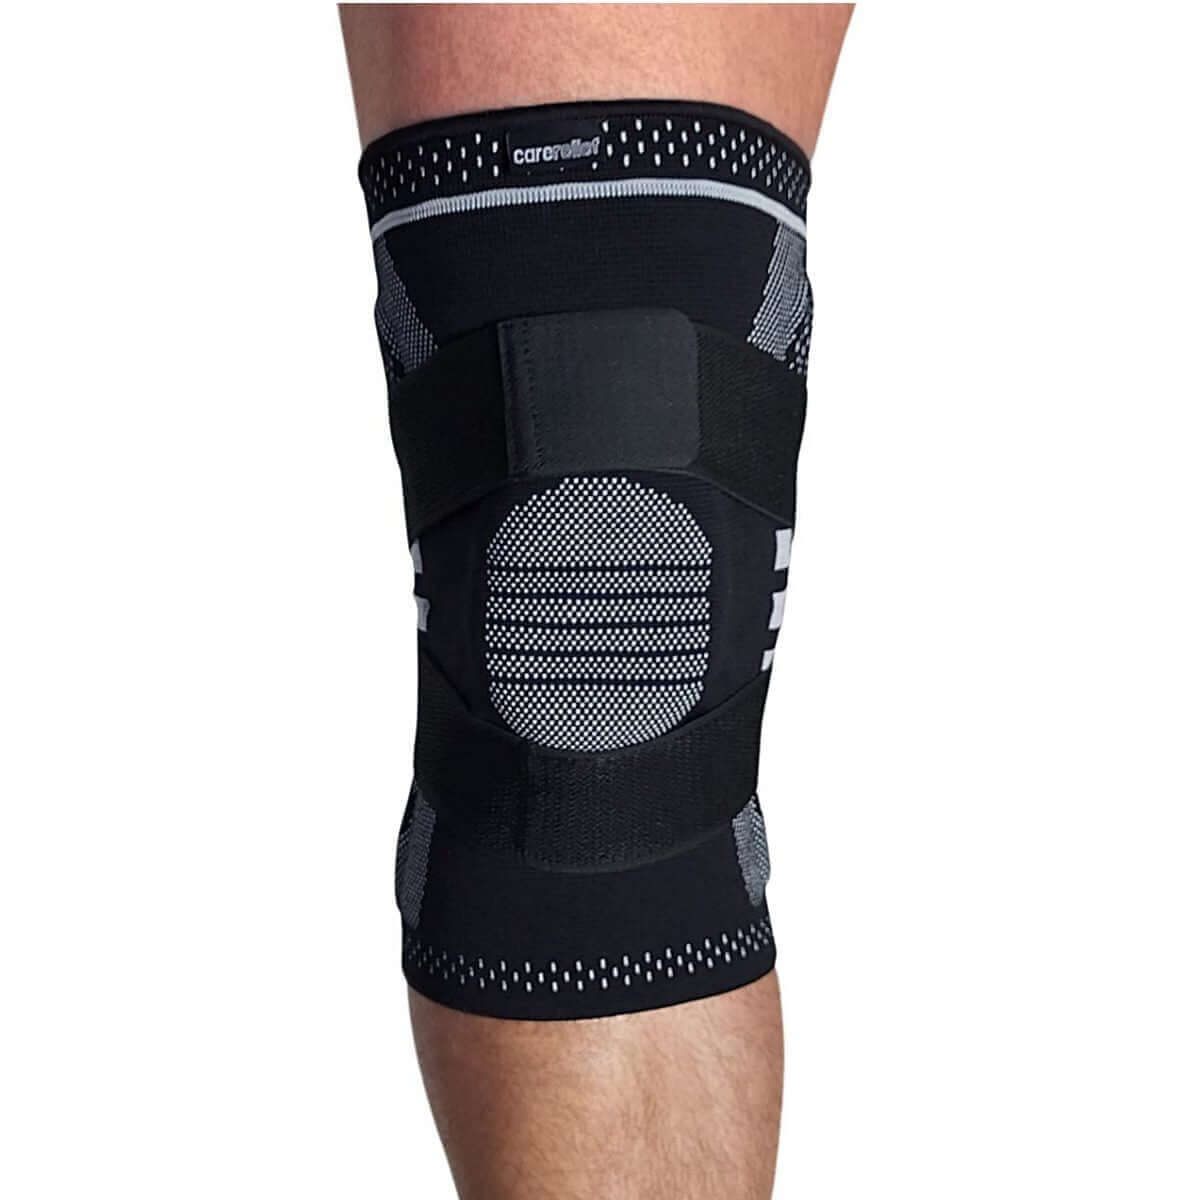 Knæbind med skinner støtter og lindrer smerter fra skader, overbelastning og vrid på knæet. Køb knæbandage med stålfjedre, silikone gel og støtte strop KN15 hos Carerelief.dk